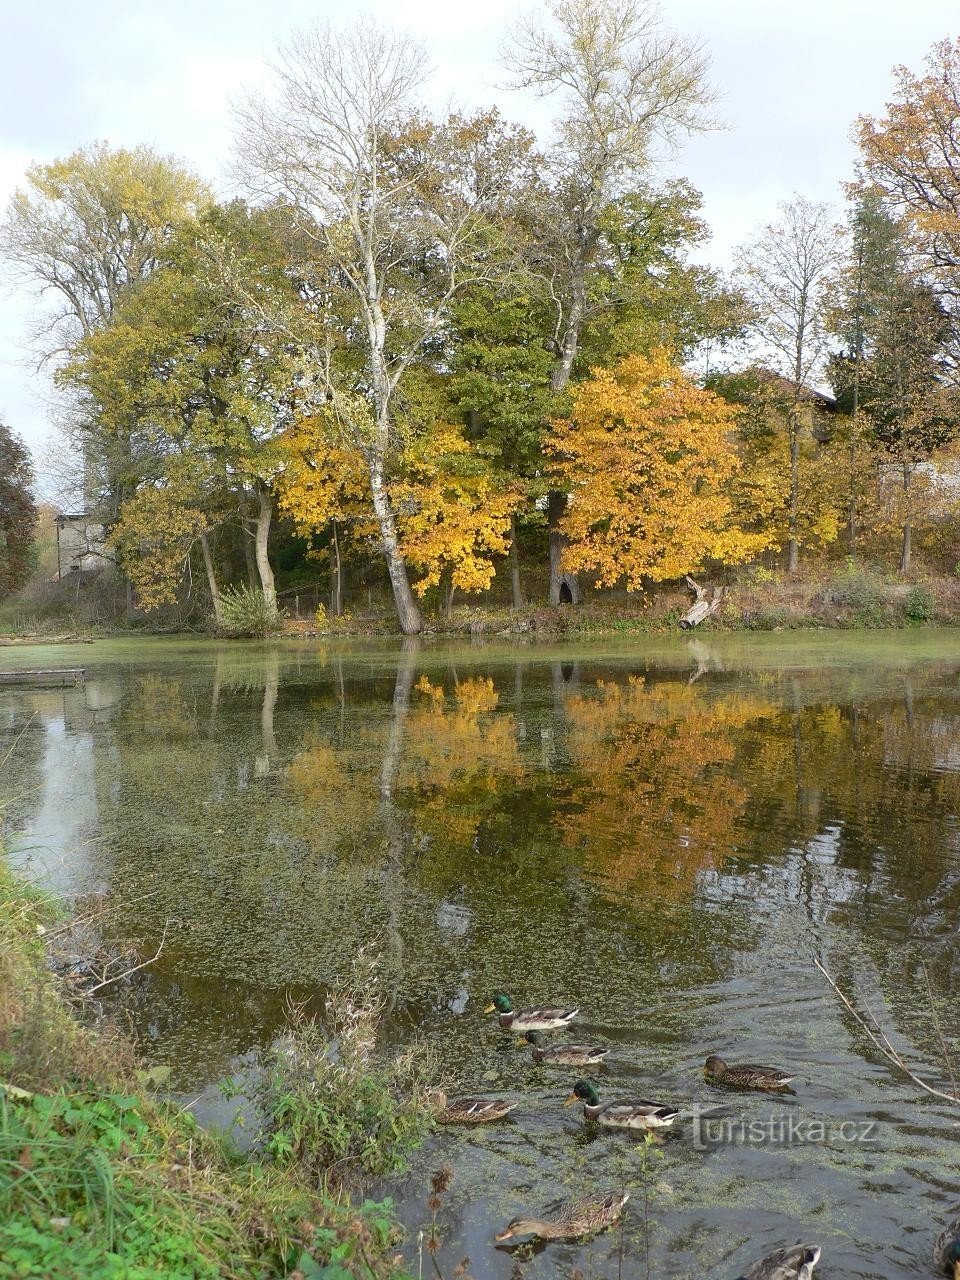 Lažane, pogled na park in ribnik